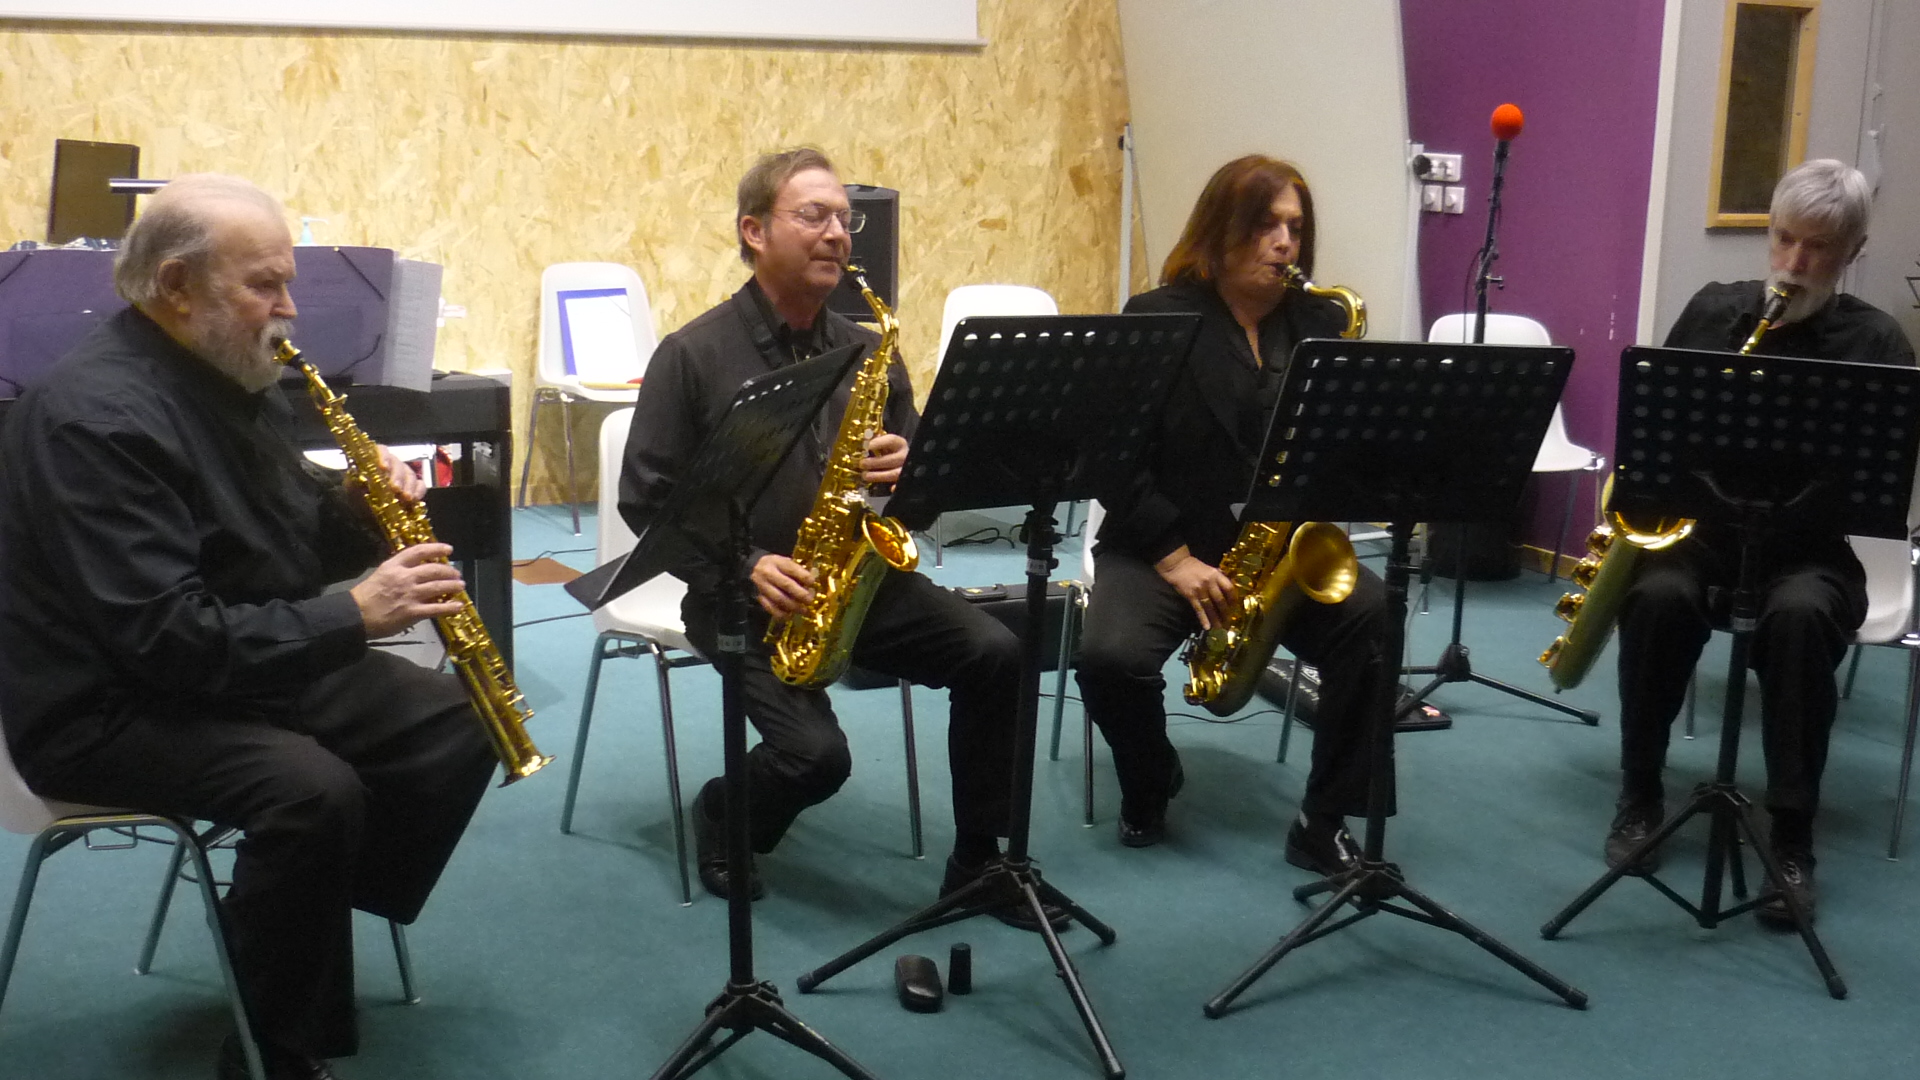 Concert la Seyne quatuor saxo